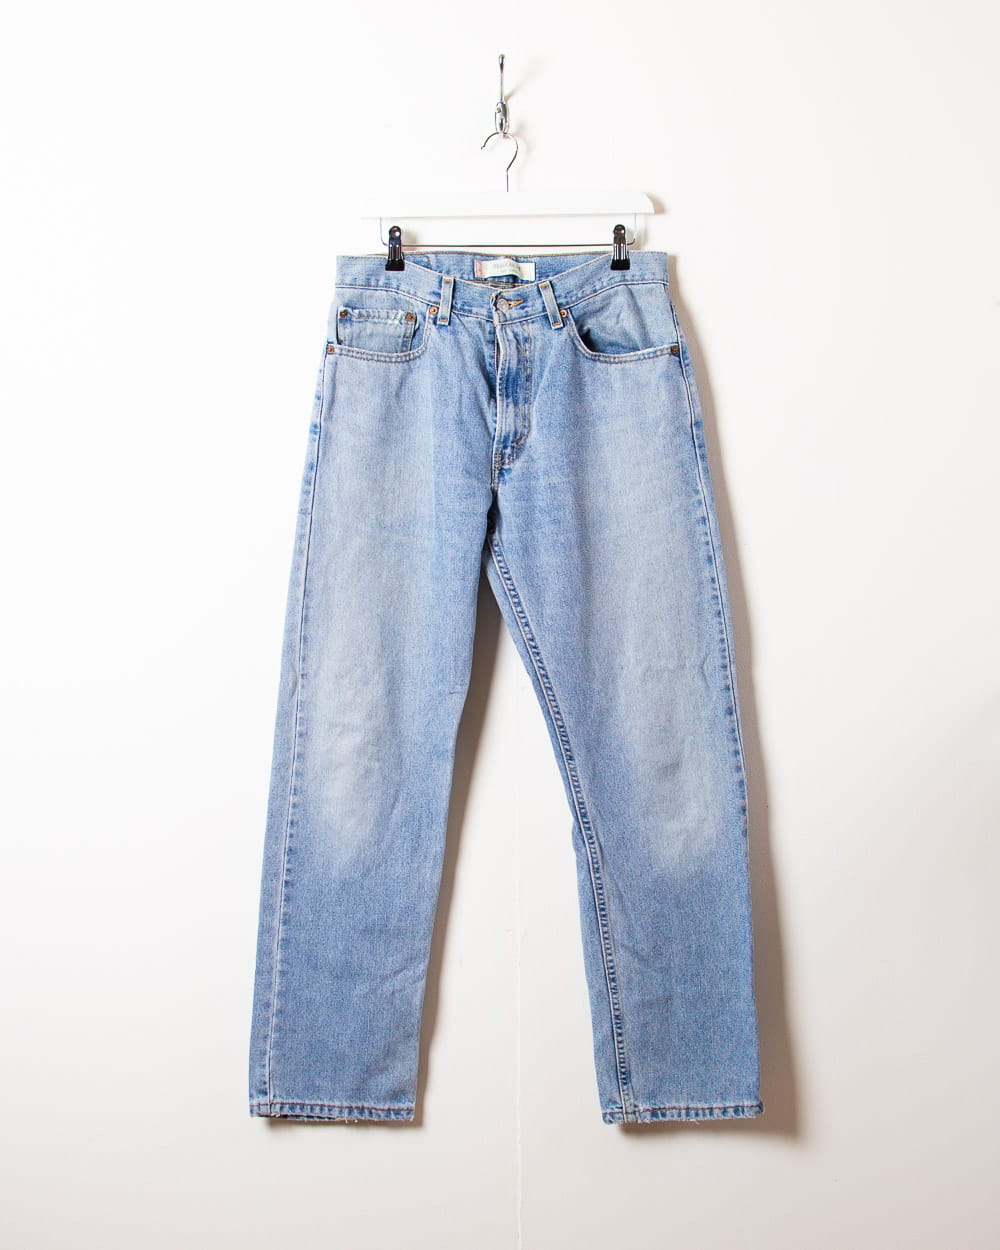 Blue Levi's 505 Jeans - W34 L31